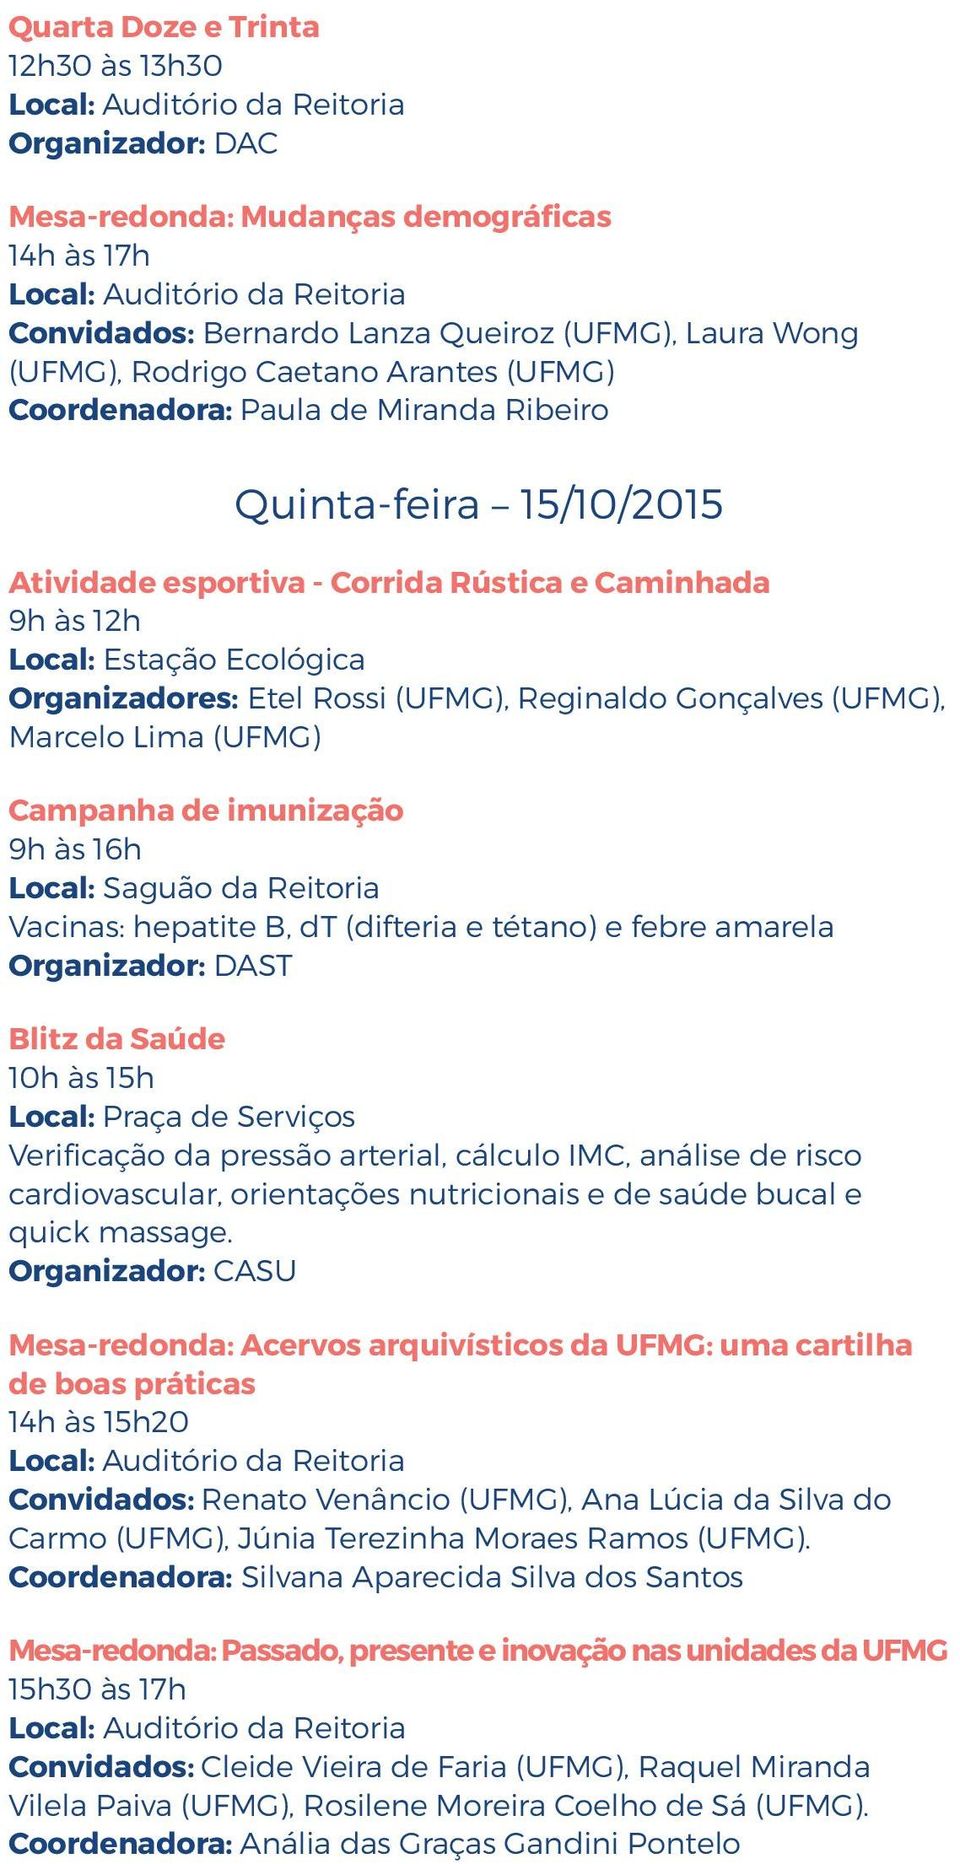 Acervos arquivísticos da UFMG: uma cartilha de boas práticas 14h às 15h20 Renato Venâncio (UFMG), Ana Lúcia da Silva do Carmo (UFMG), Júnia Terezinha Moraes Ramos (UFMG).